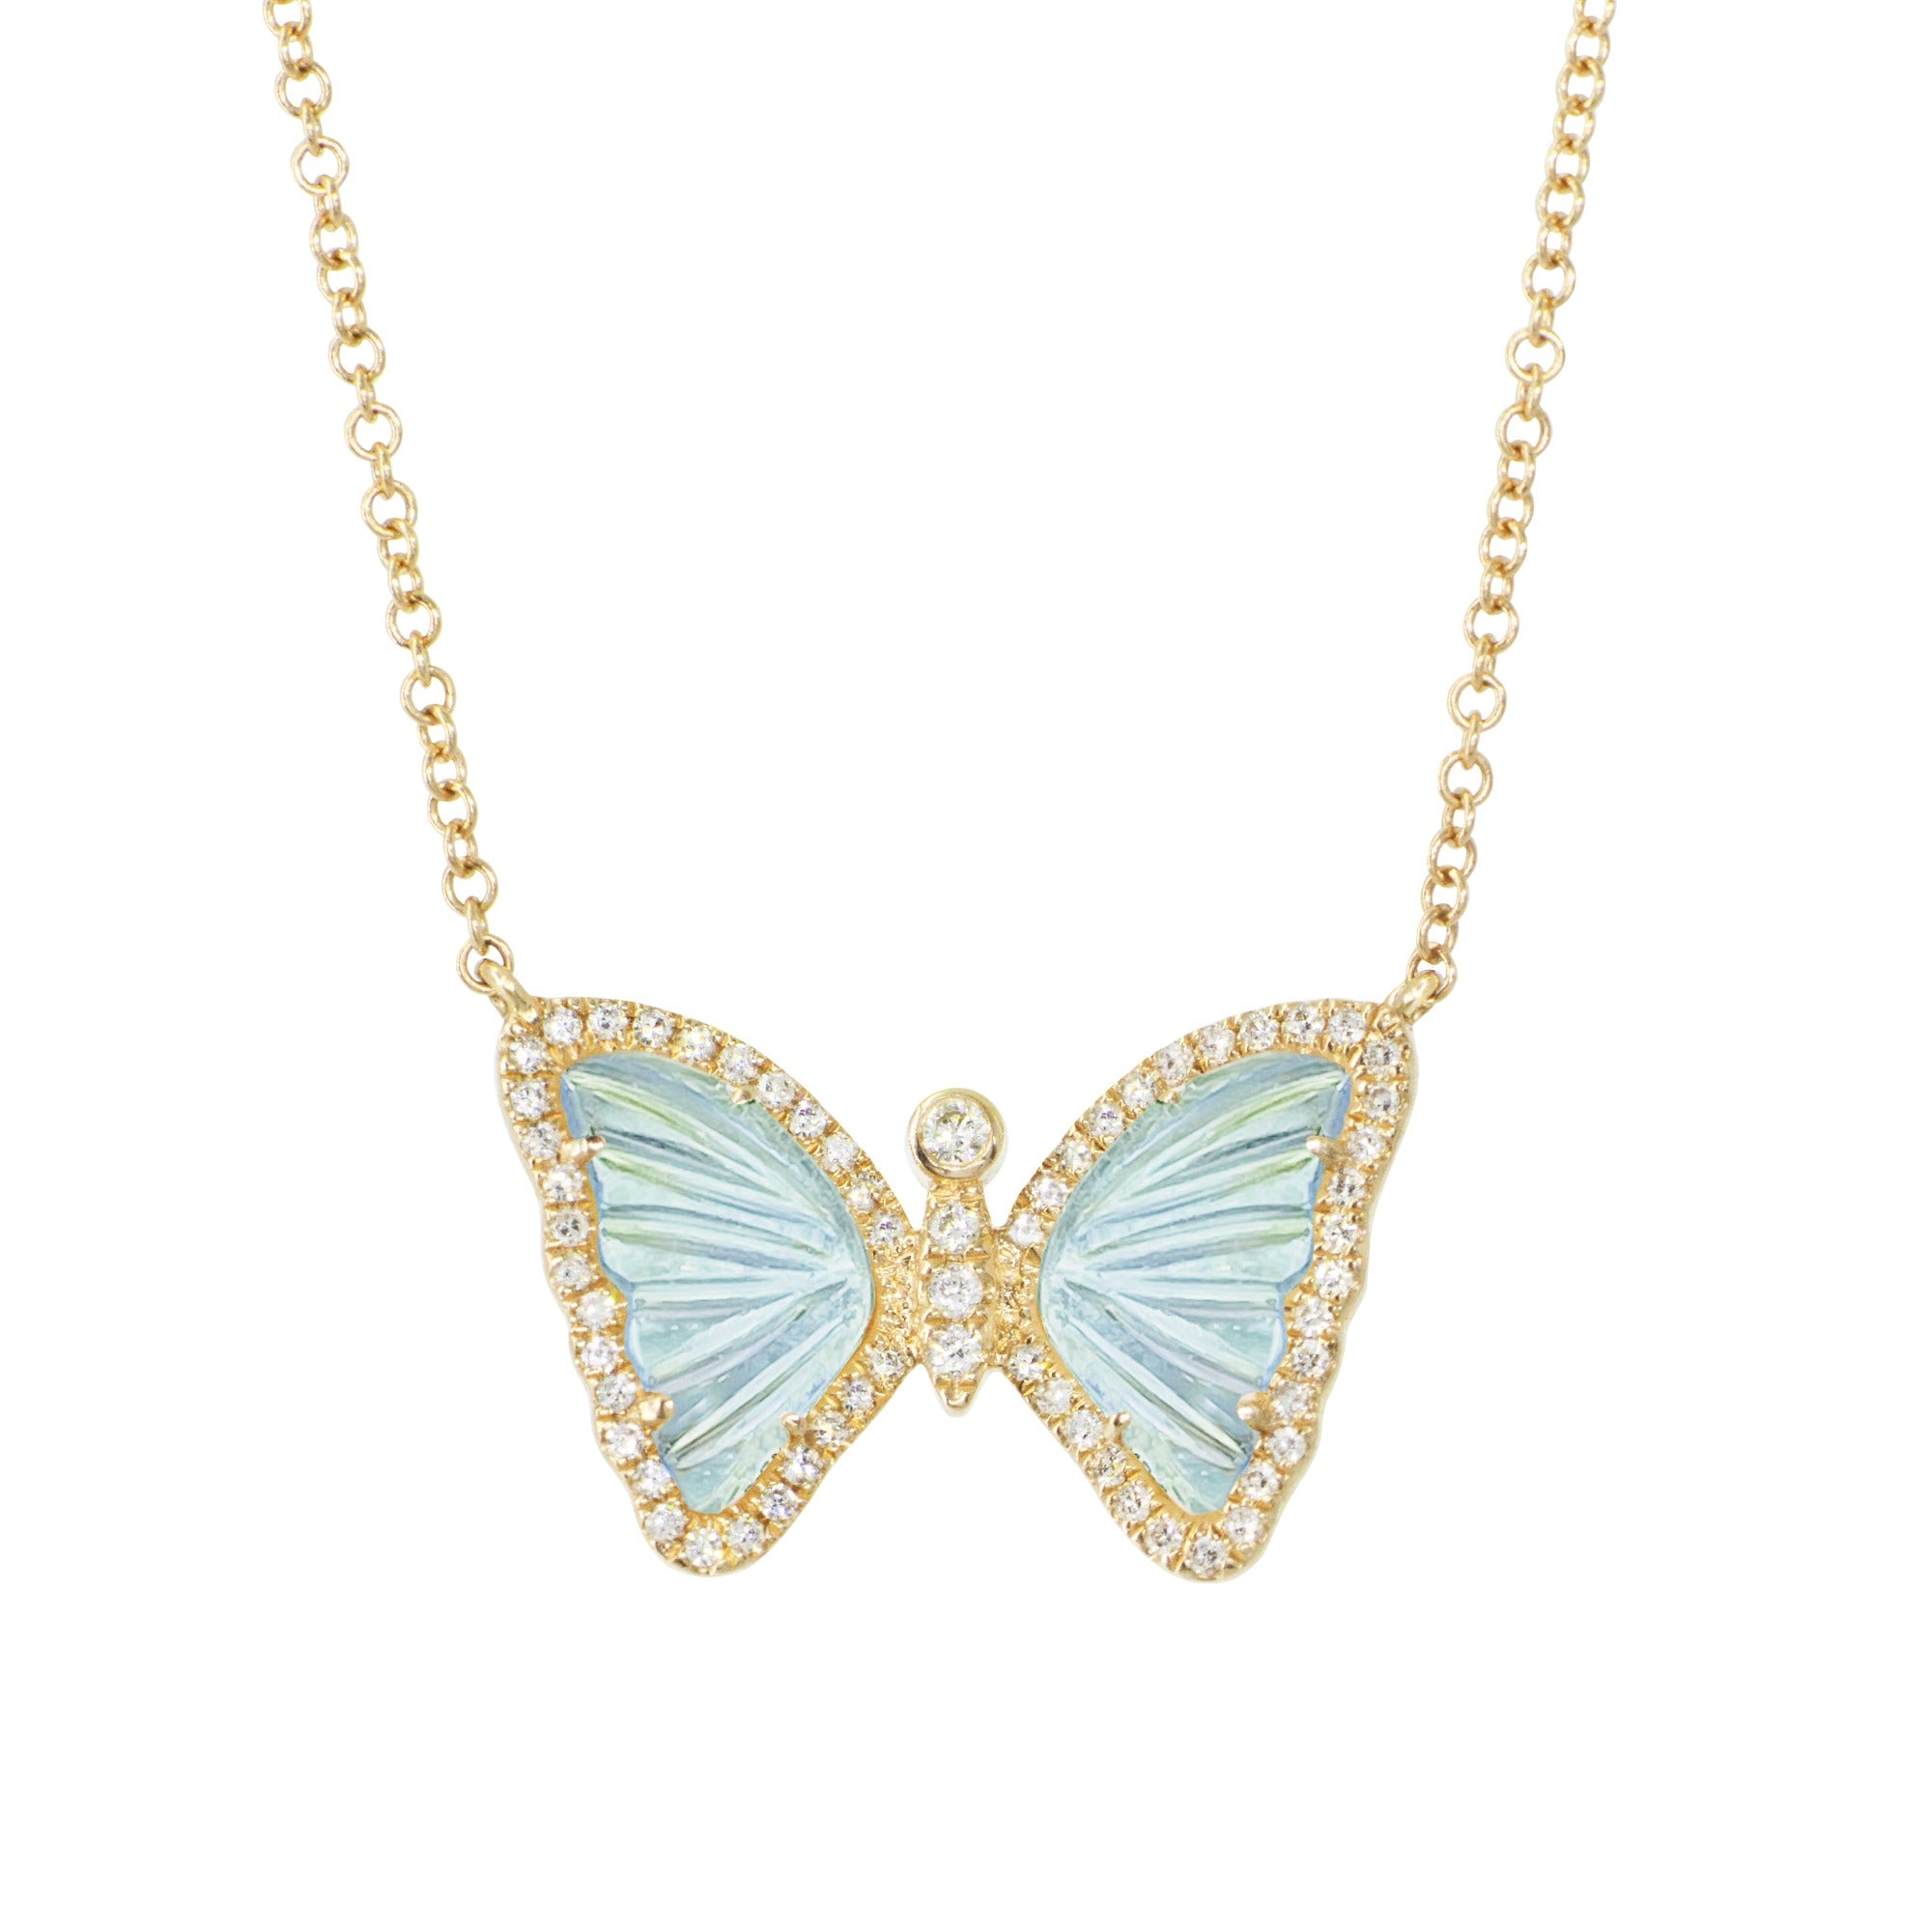 Mini Swiss Blue Topaz Butterfly Necklace with Diamonds